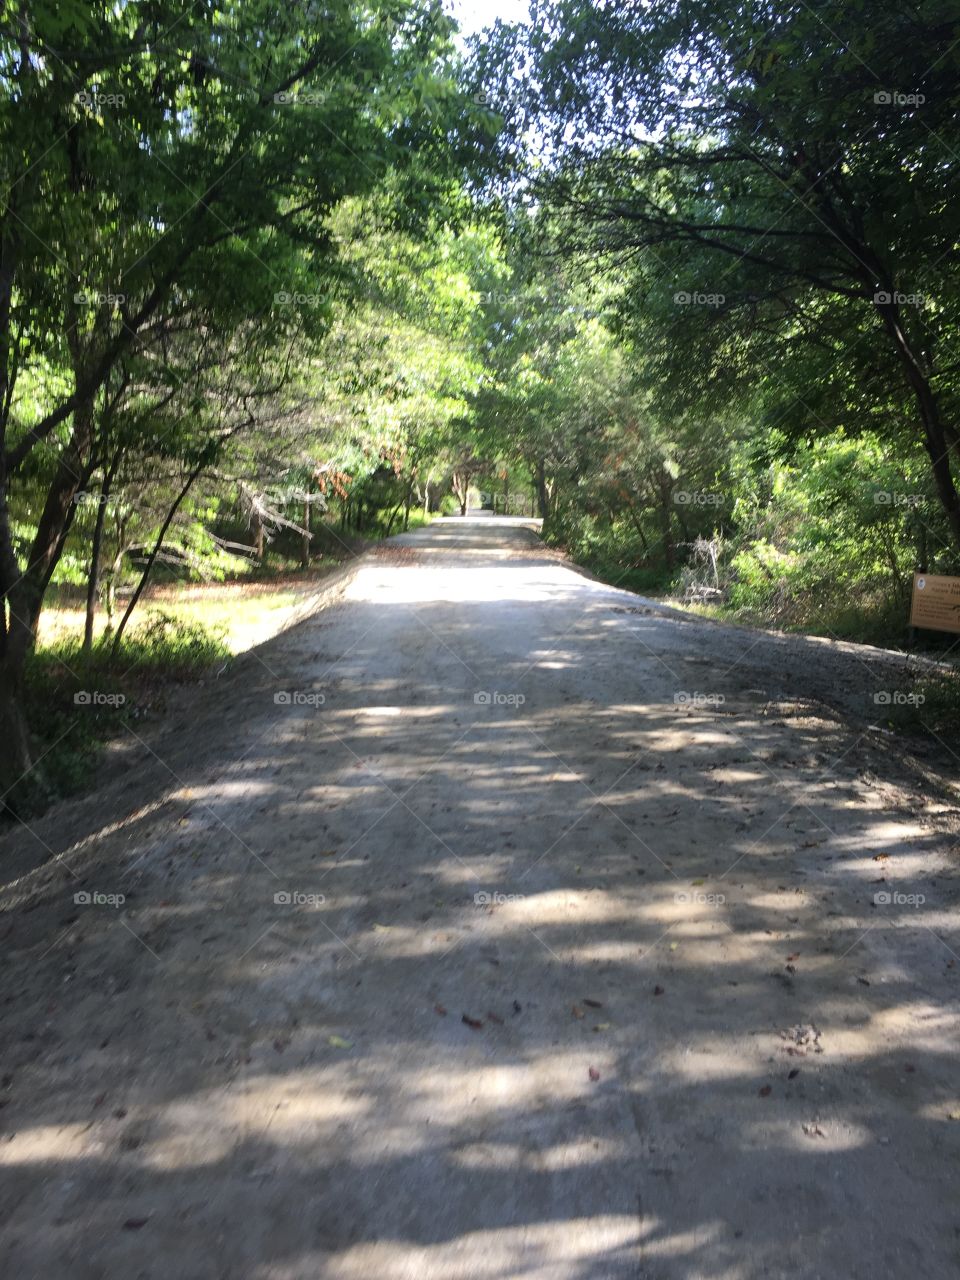 Magnolia road